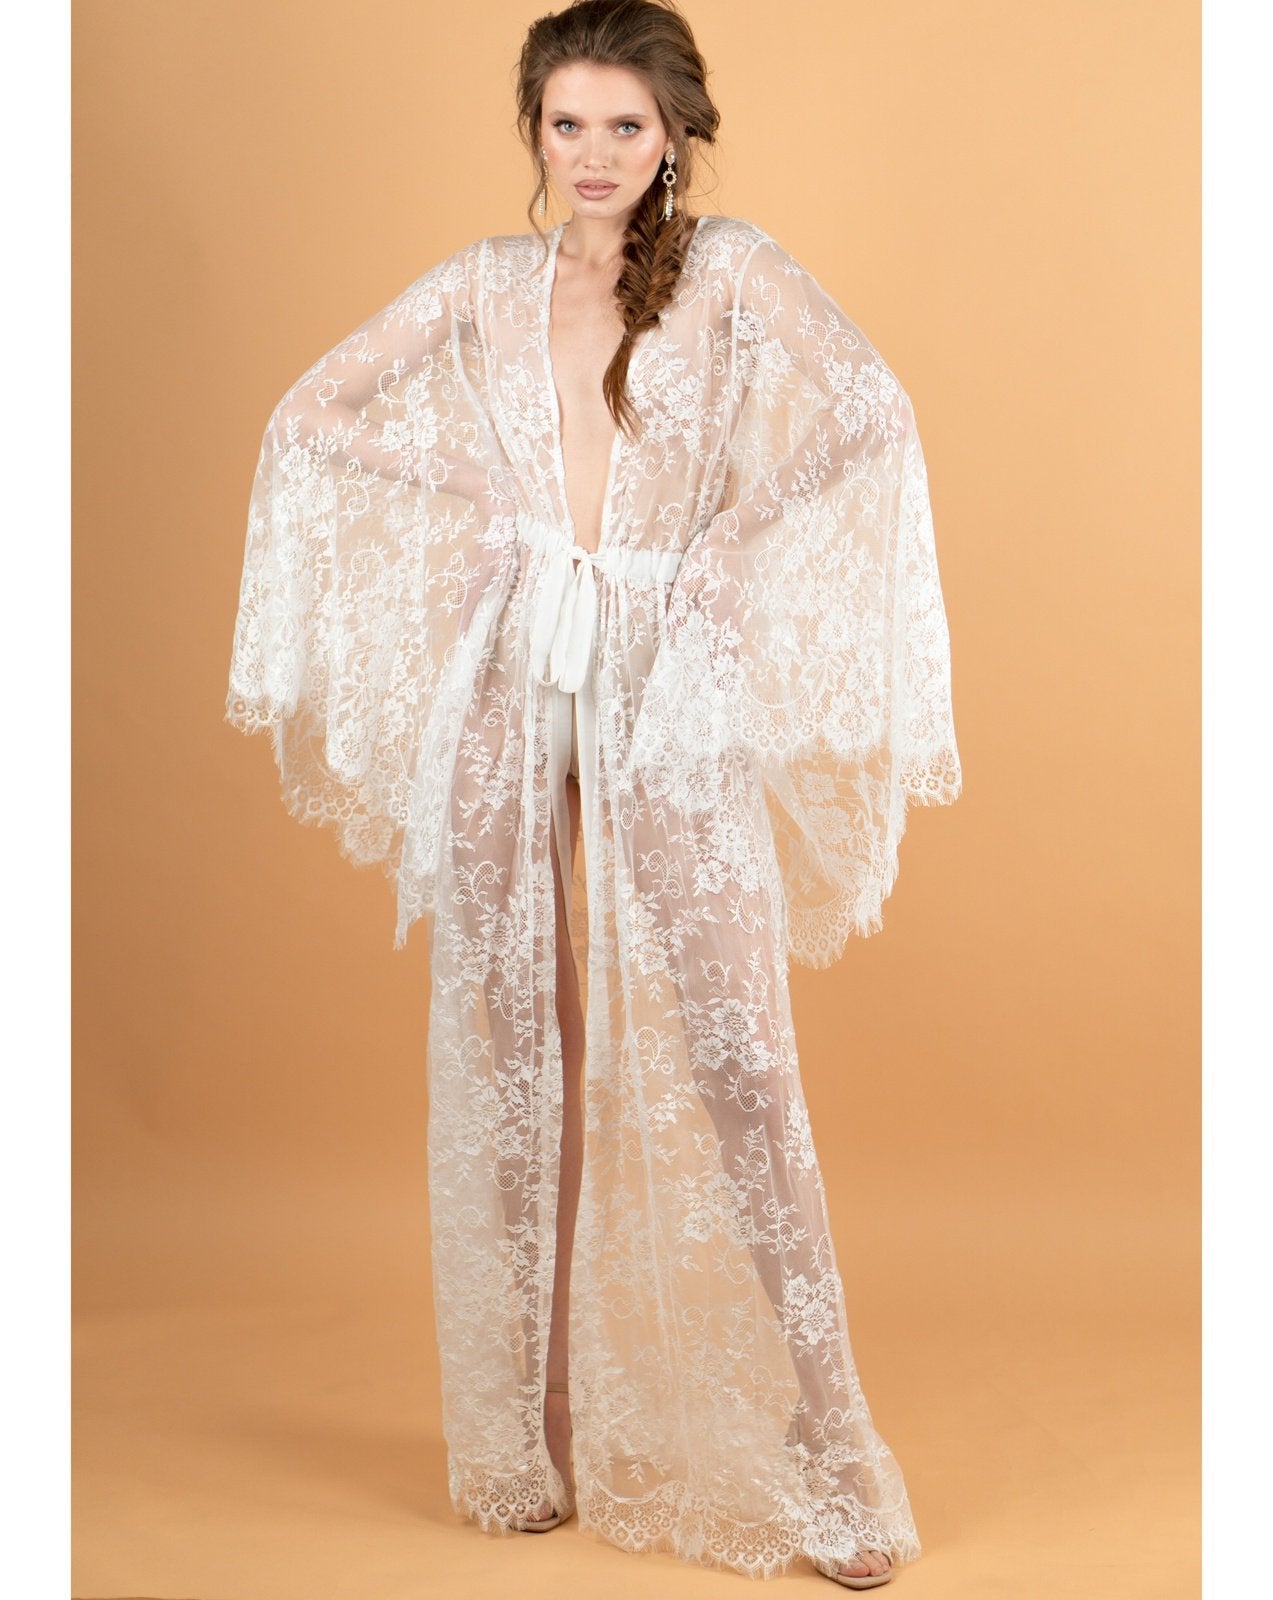 Lumina Long Lace Sheer Robe